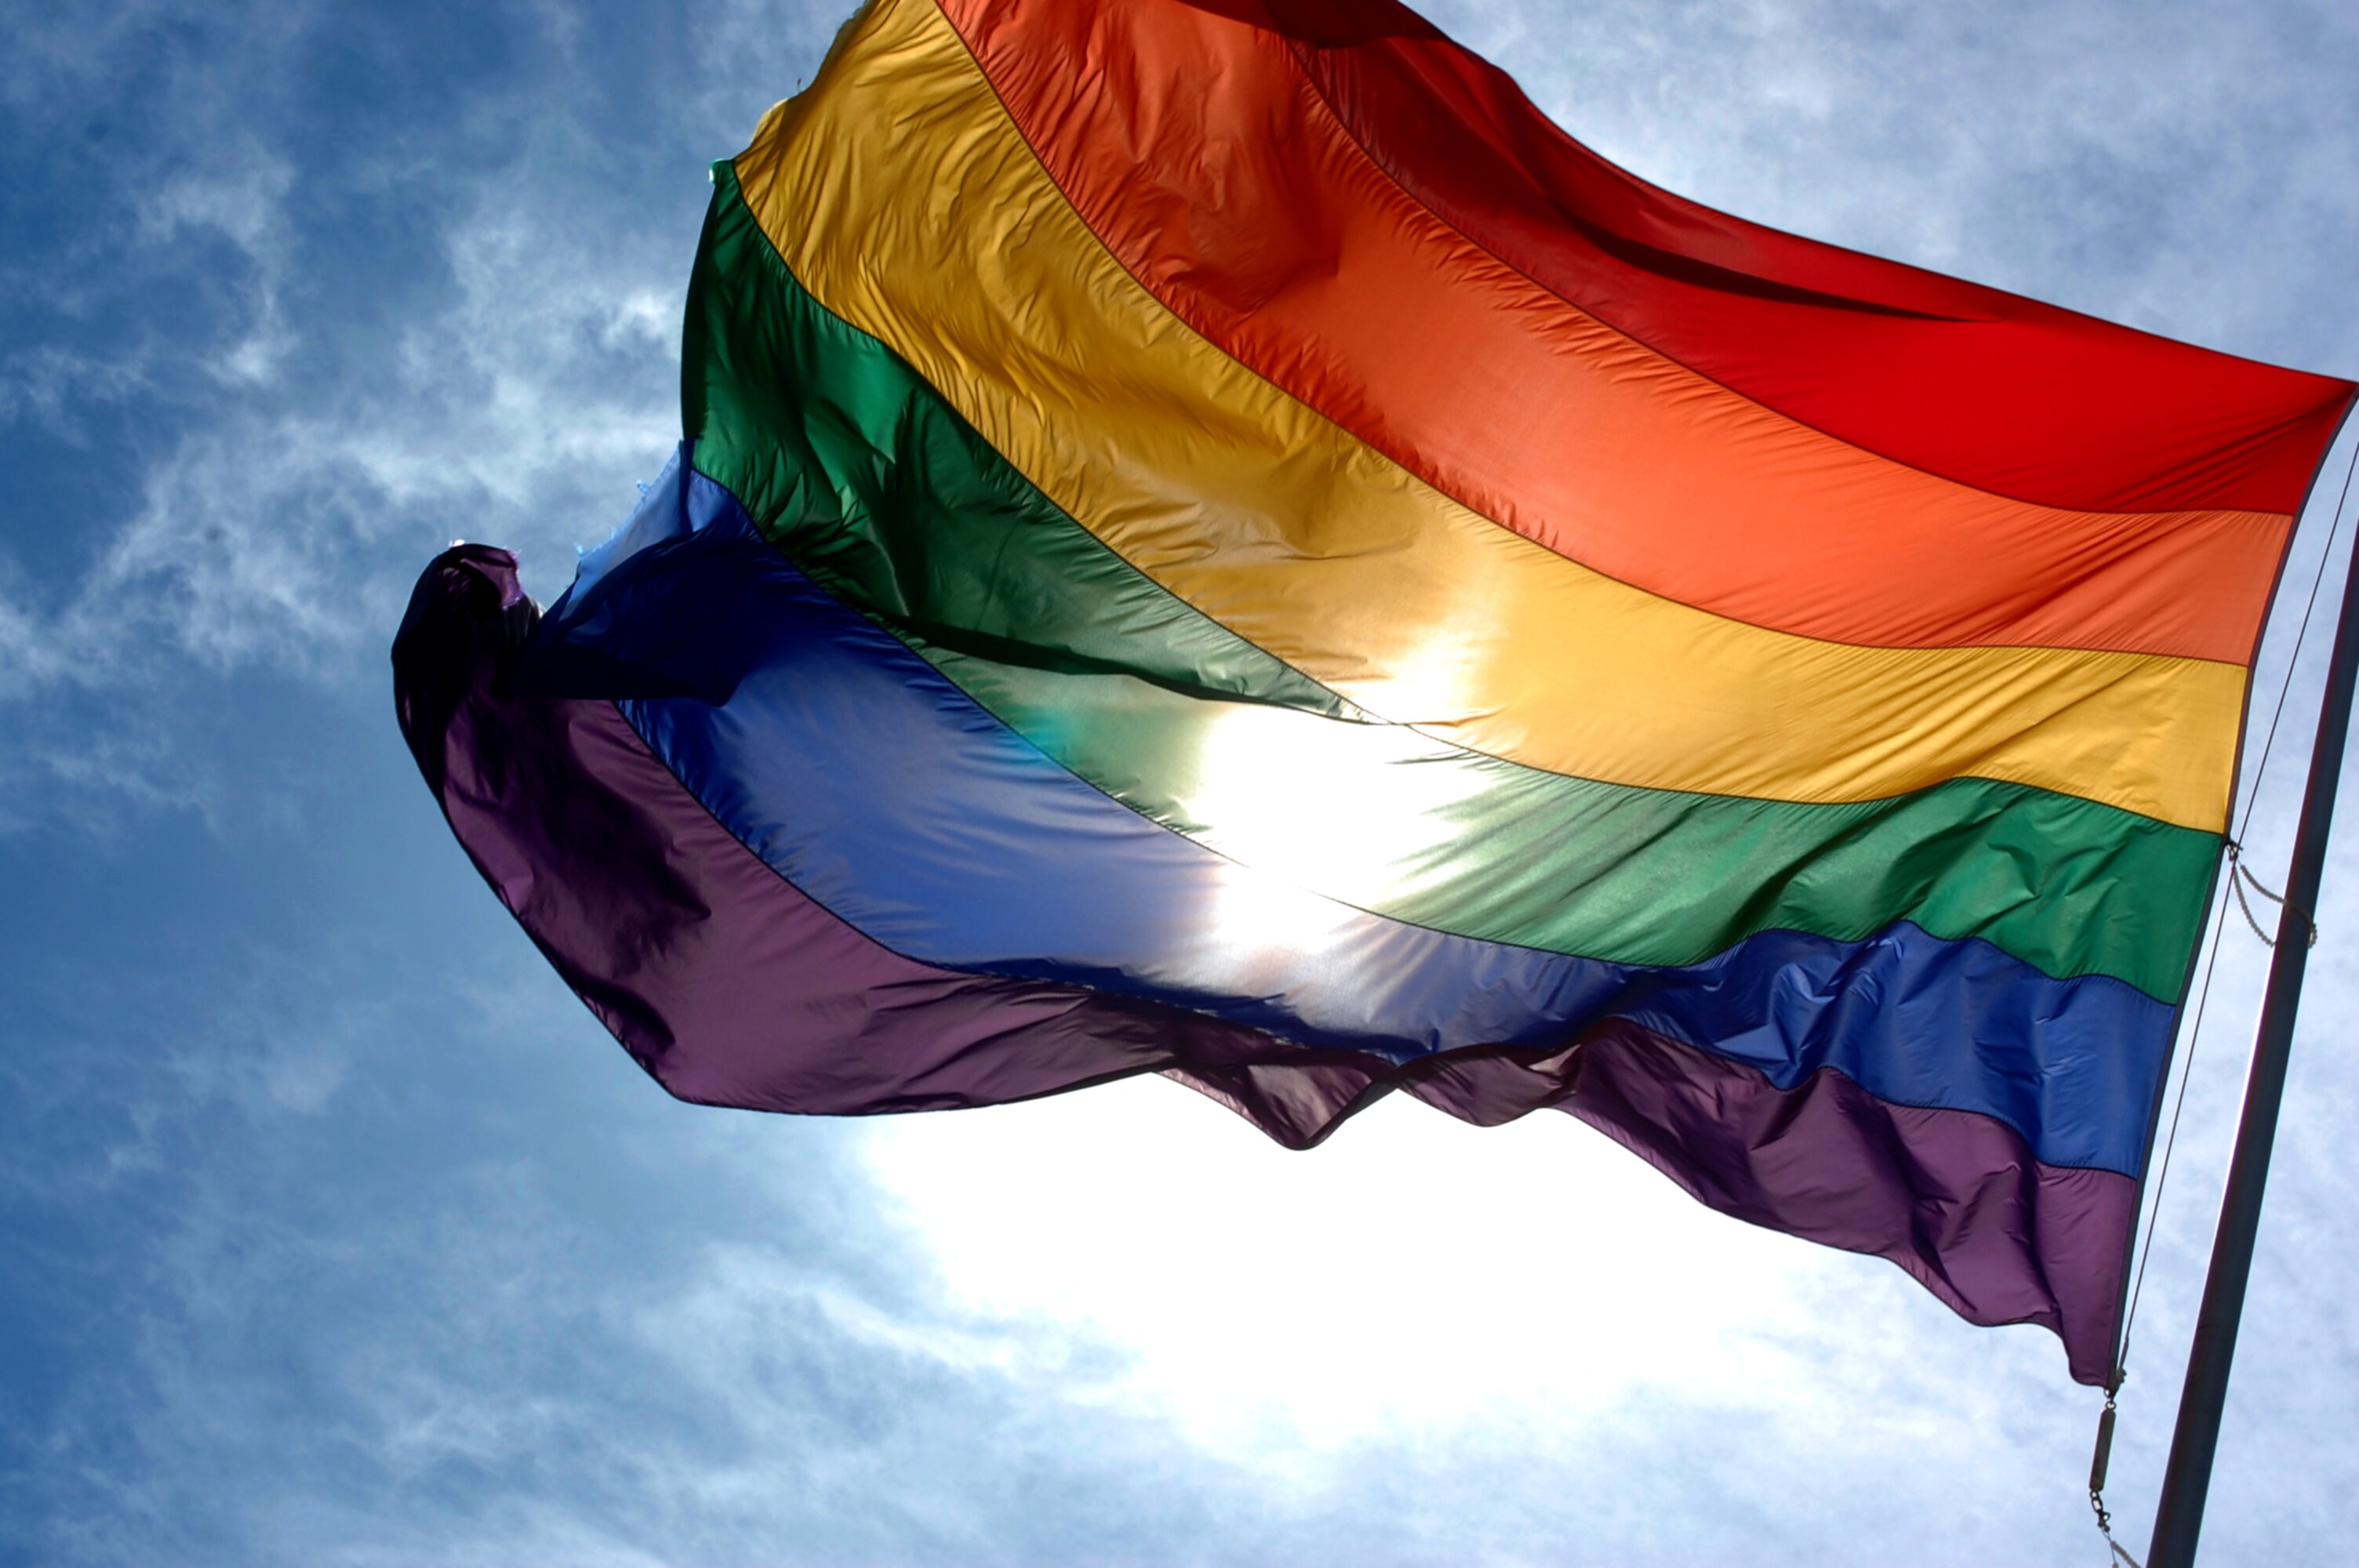 The rainbow flag